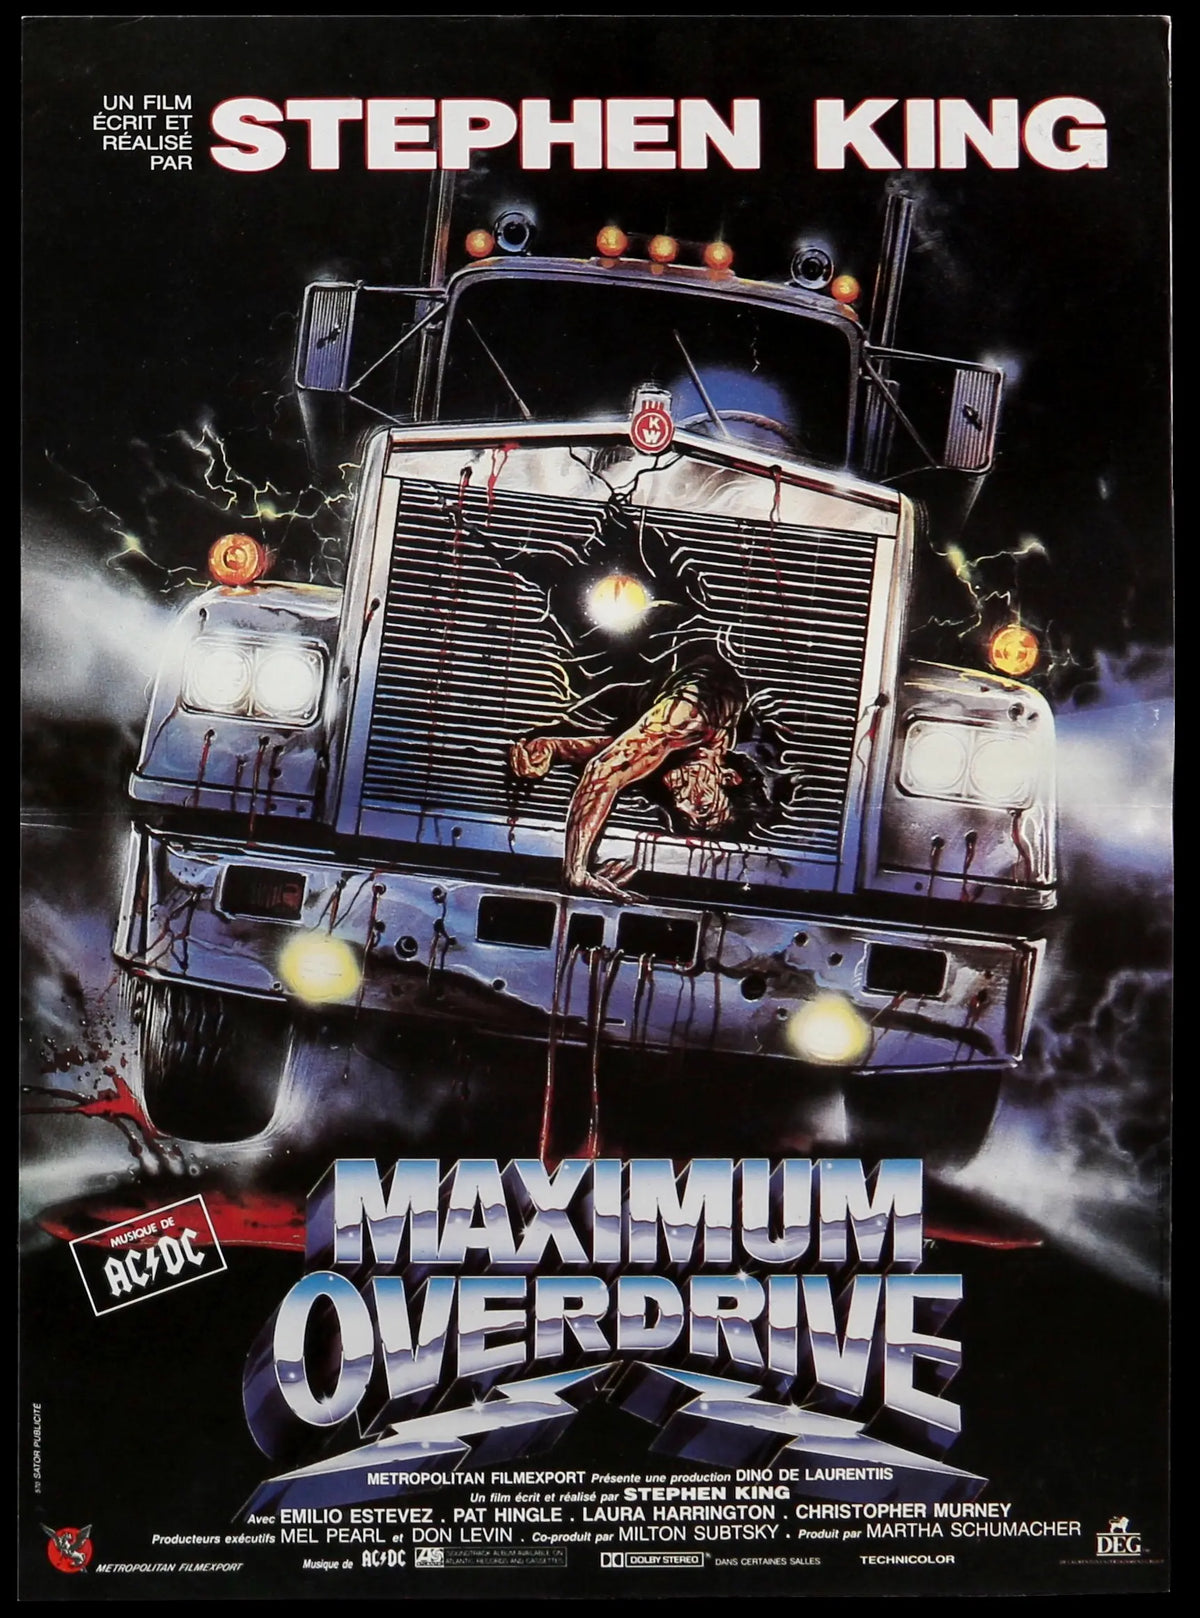 Maximum Overdrive (1986) original movie poster for sale at Original Film Art